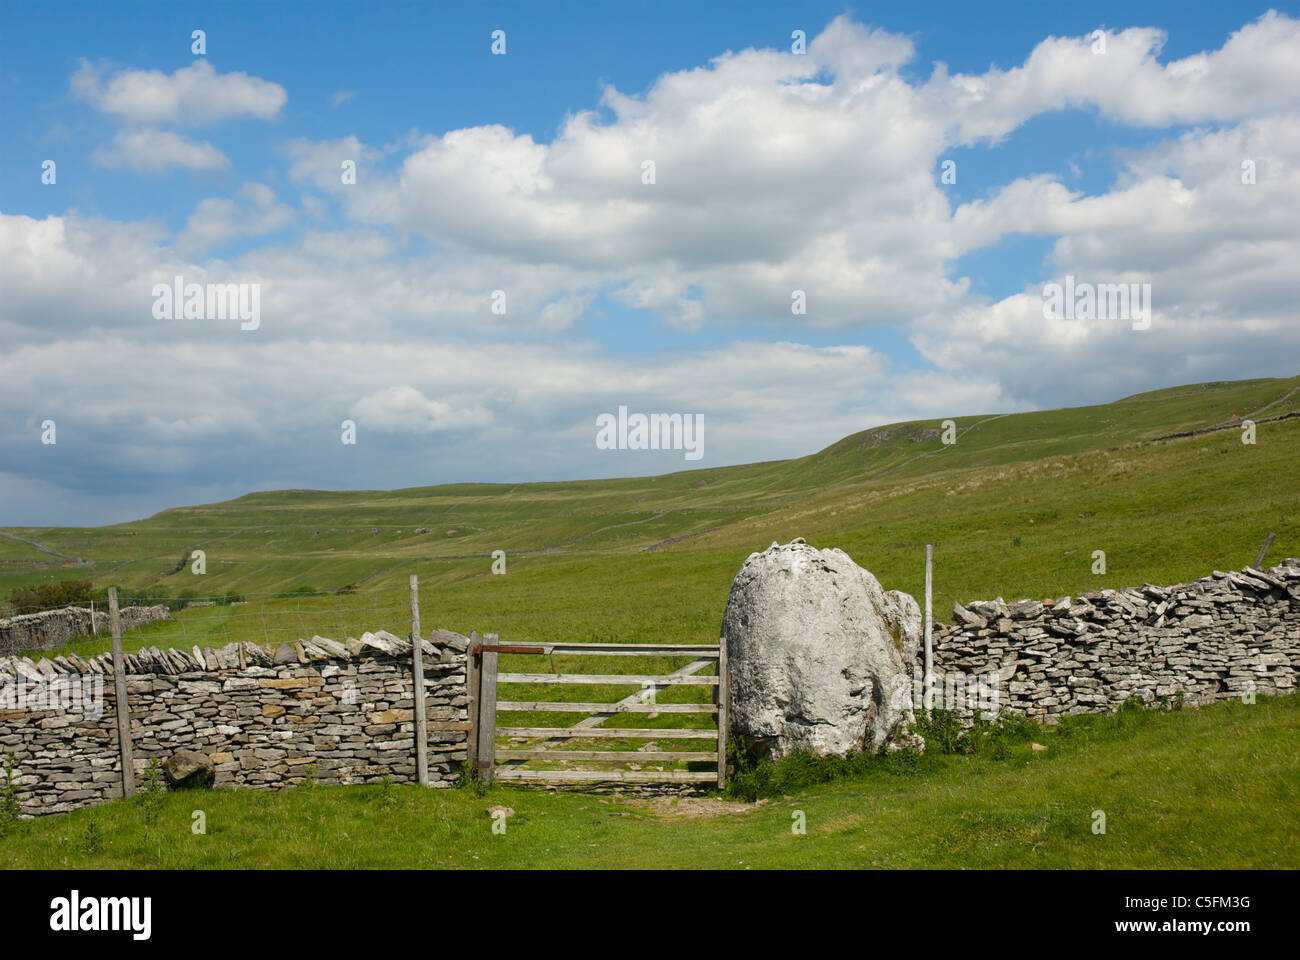 Kalkstein-Landschaft in der Nähe von Cray, Upper Wharfedale Yorkshire Dales National Park, England UK Stockfoto